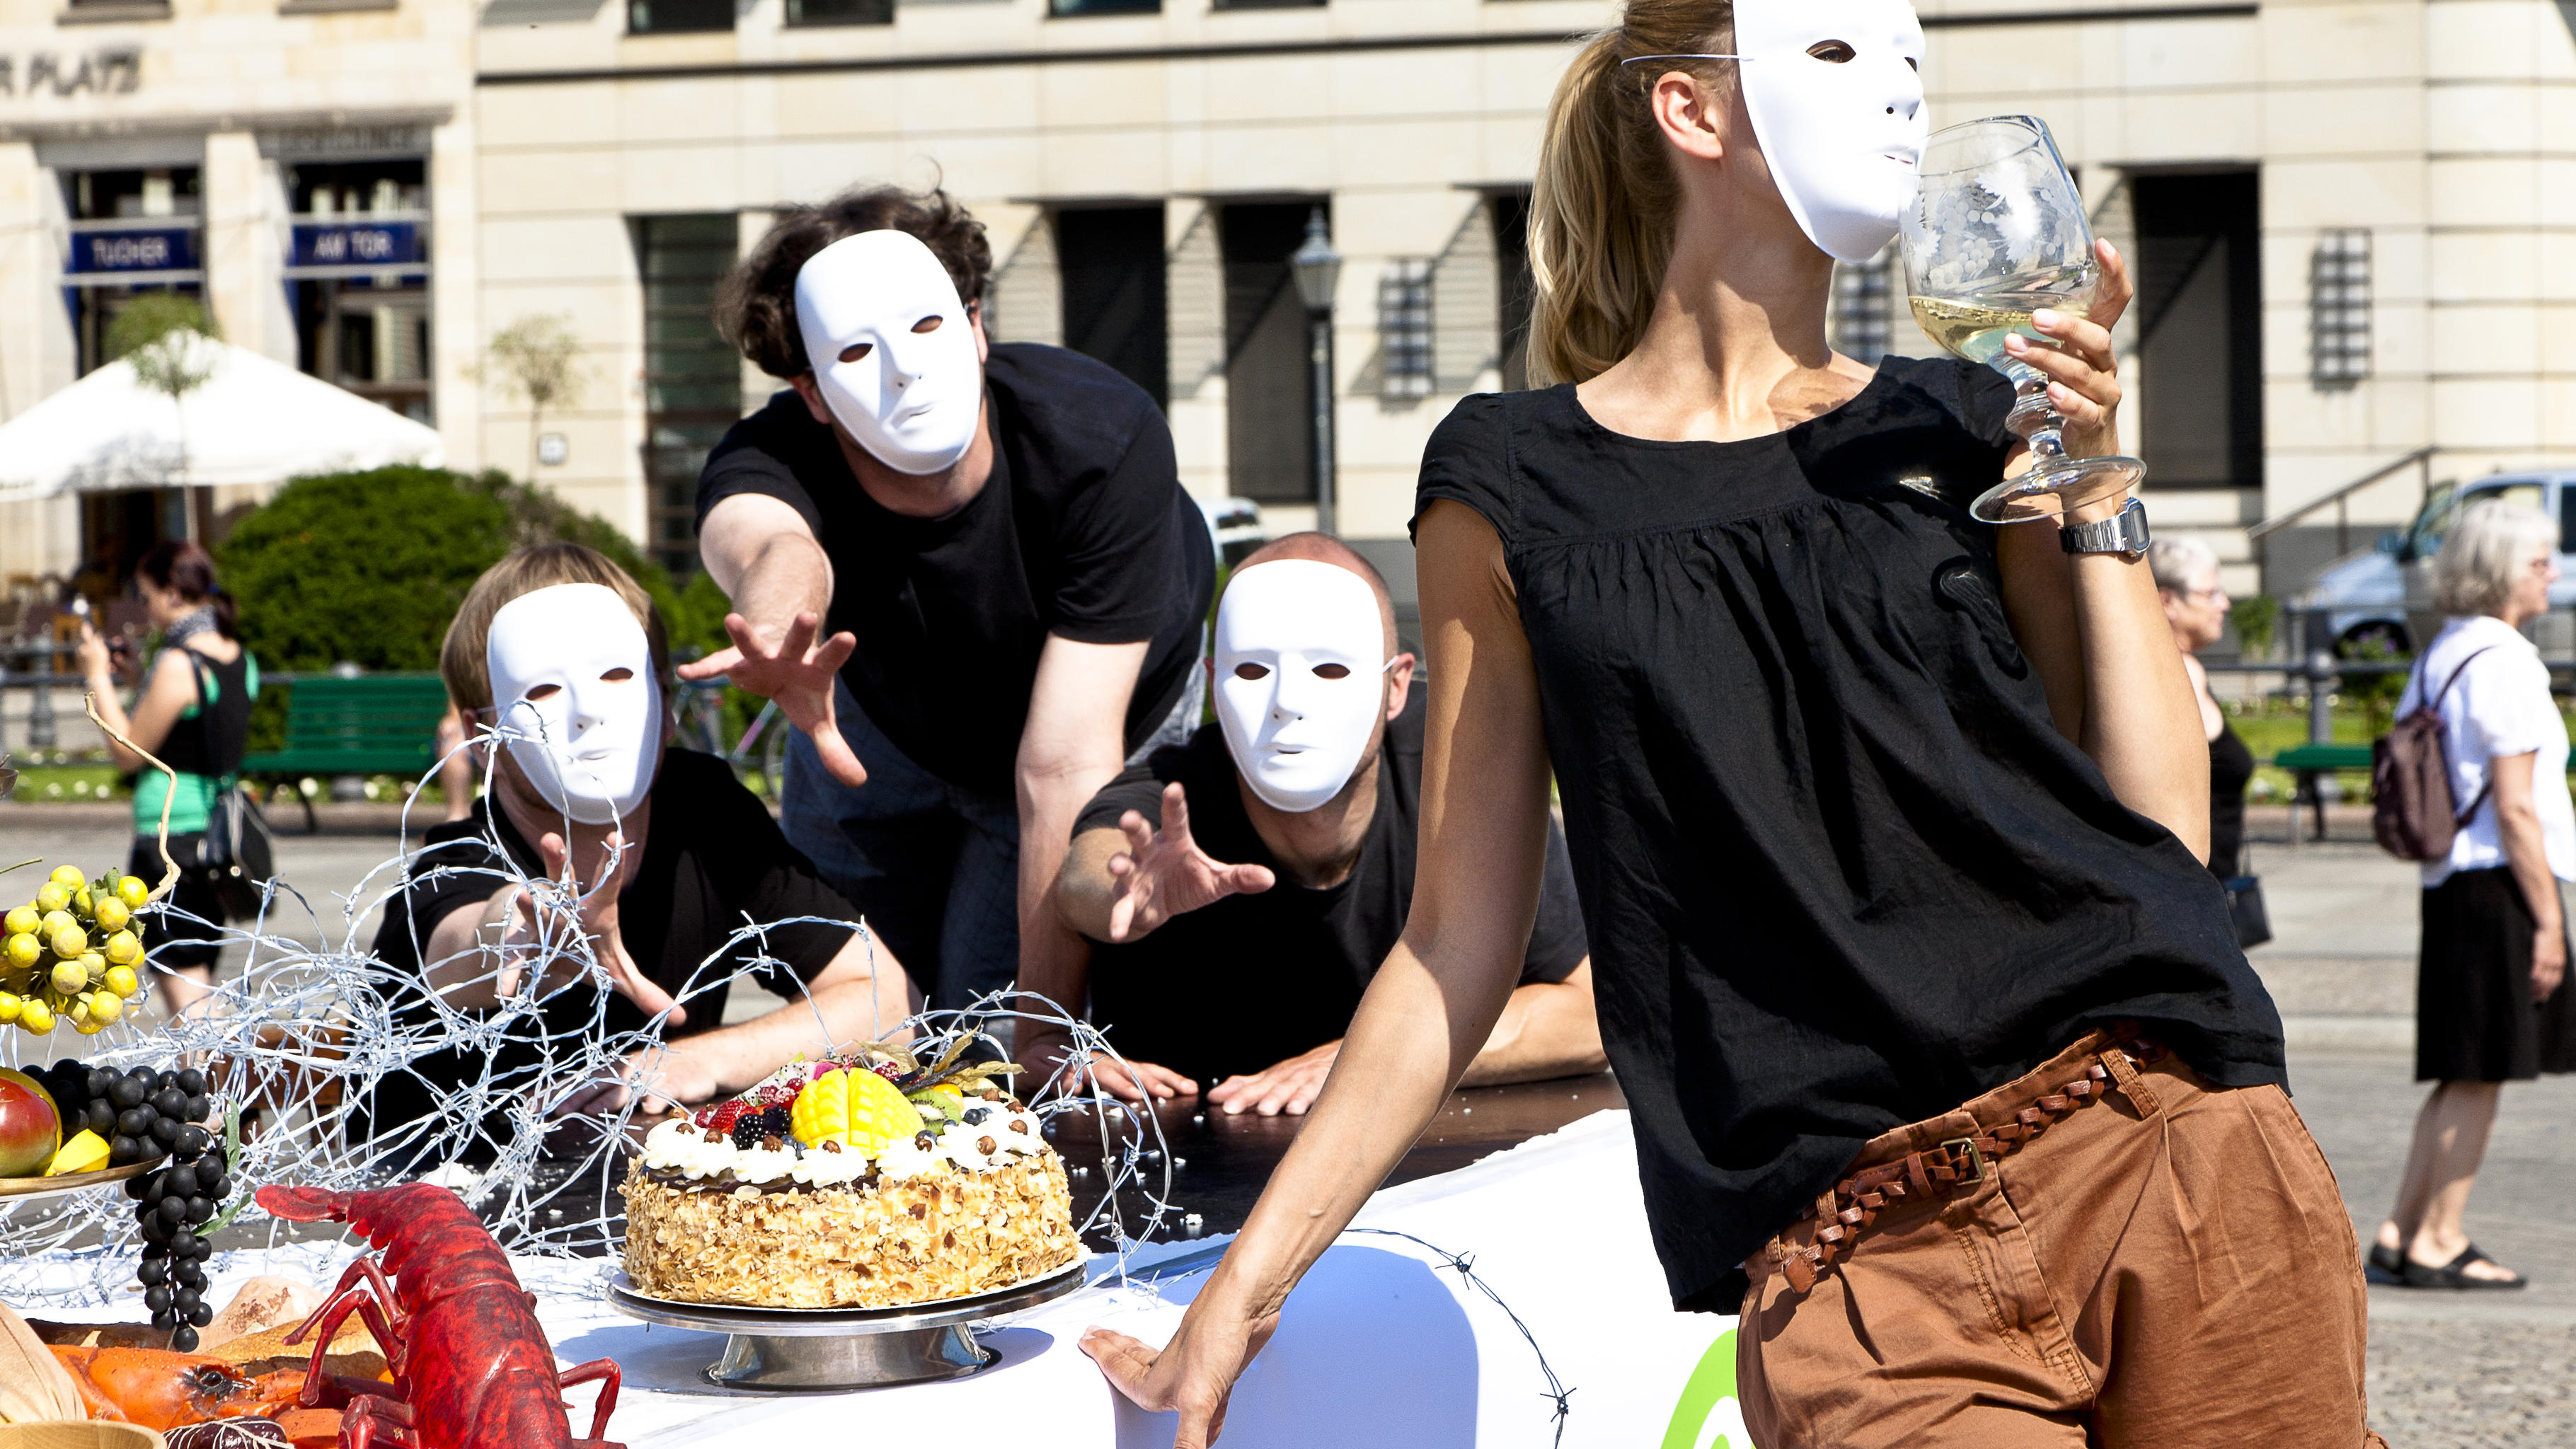 Oxfam startet die neue Kampagne "Mahlzeit! - Ein Planet. 9 Milliarden. Alle satt" mit einer Foto-Aktion vor dem Brandenburger Tor.